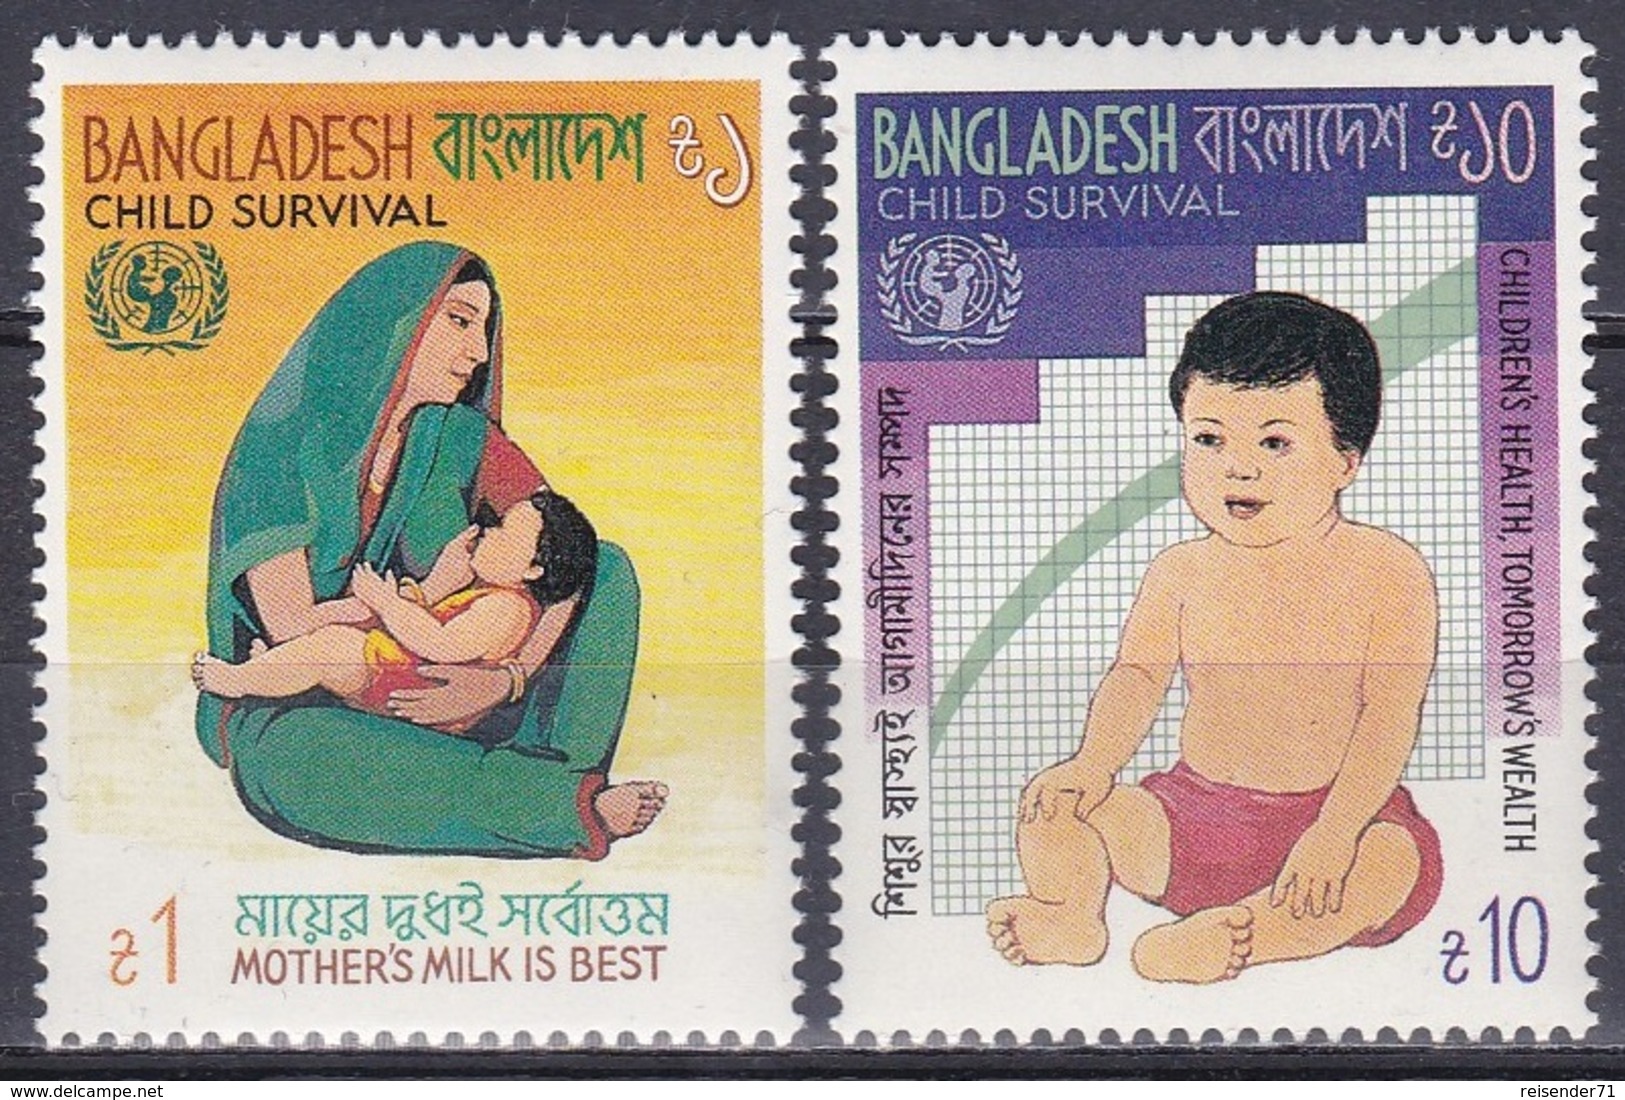 Bangladesch Bangladesh 1985 Organisationen UNO ONU Gesundheit Health Kindersterblichkeit Child Mortality, Mi. 225-6 ** - Bangladesh